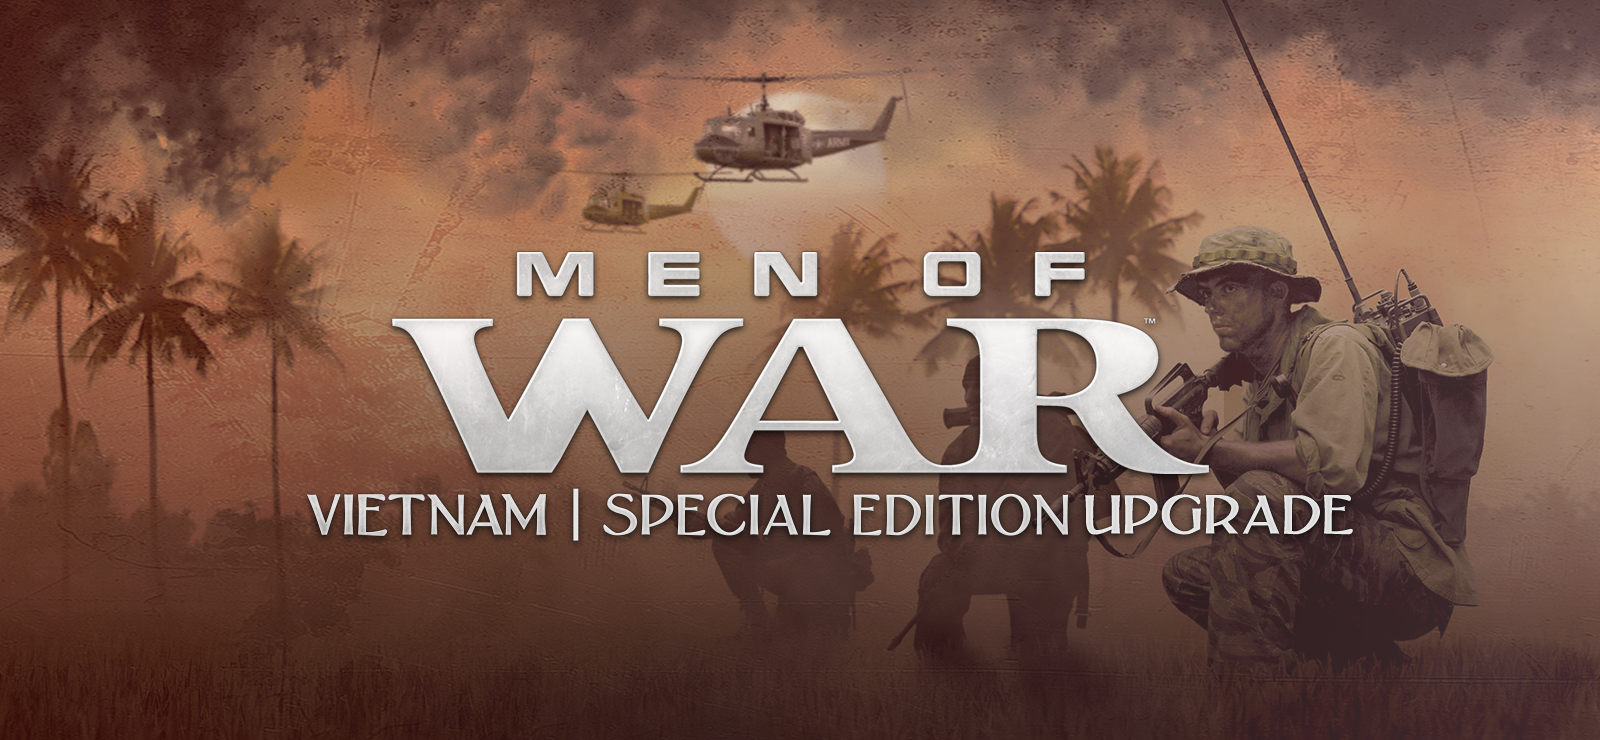 Men Of War: Vietnam Special Edition Upgrade